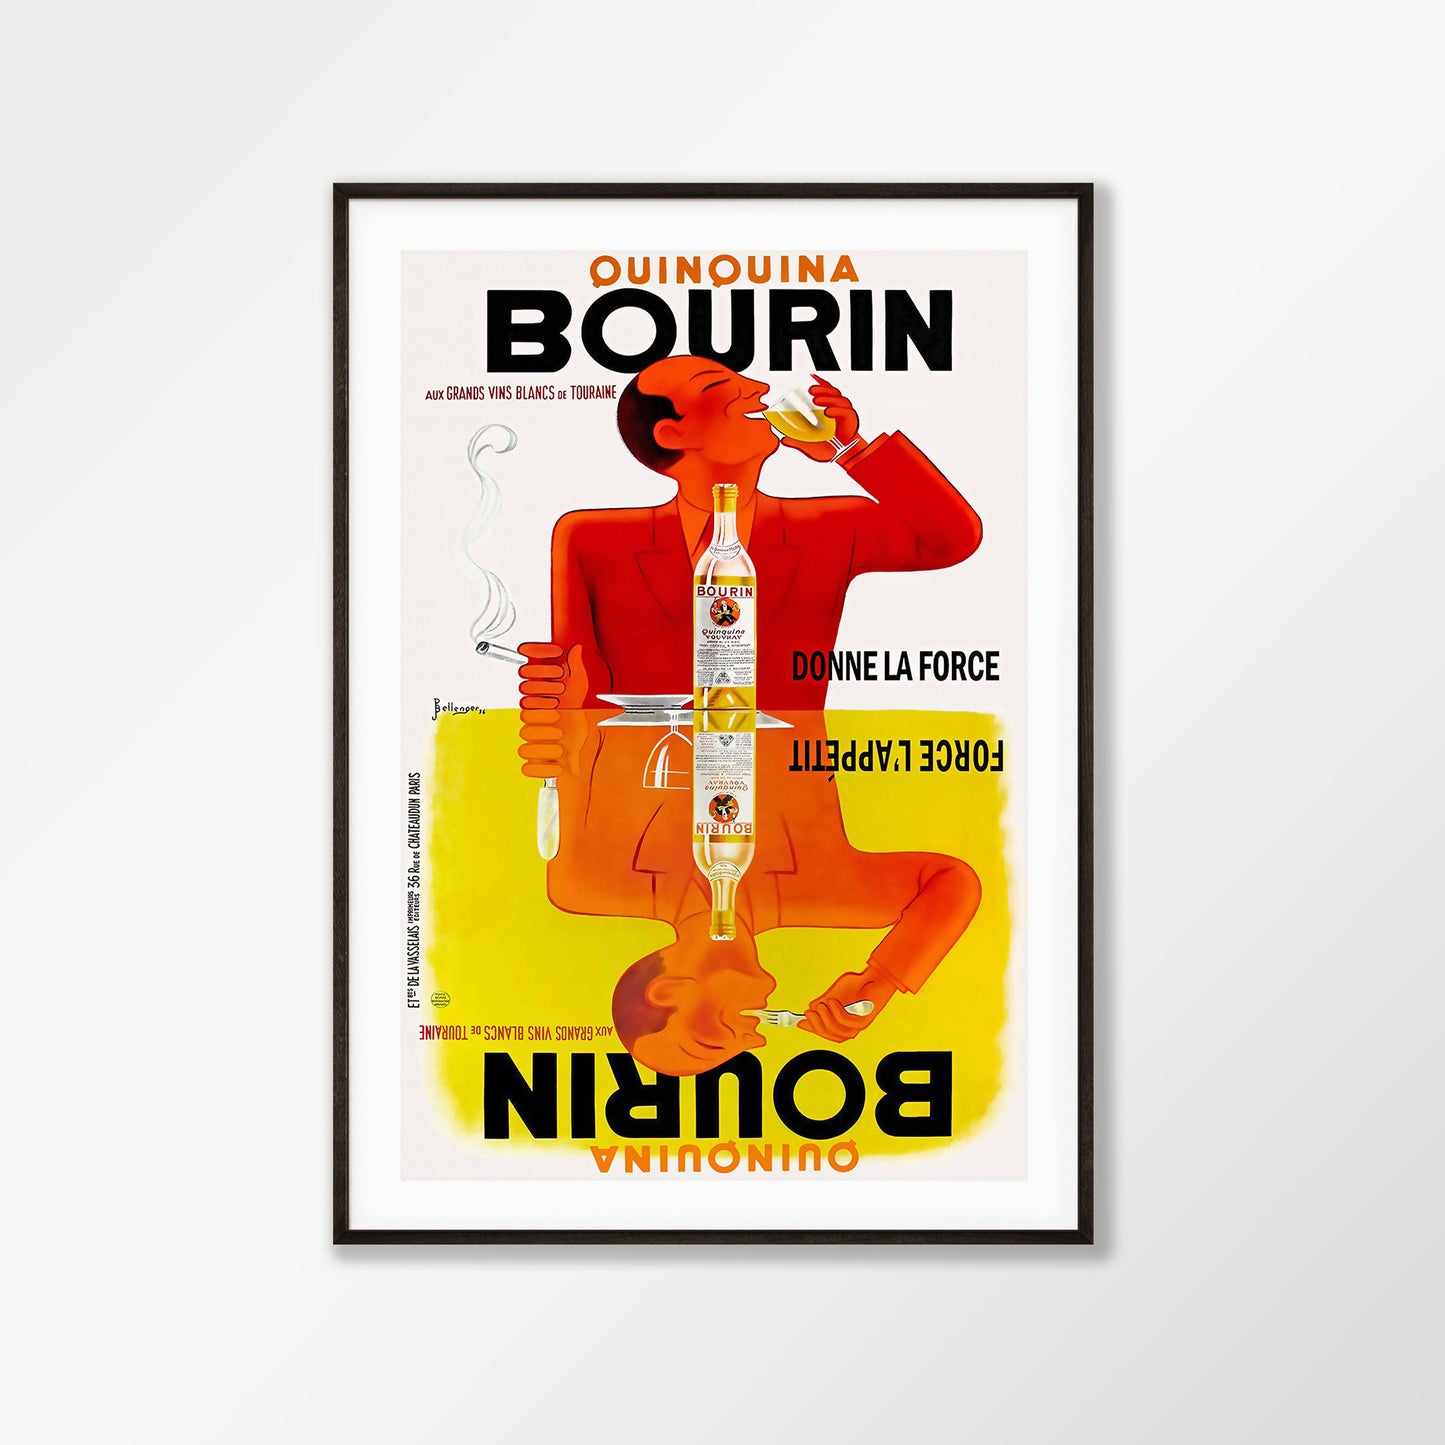 Bourin Quinquina Poster